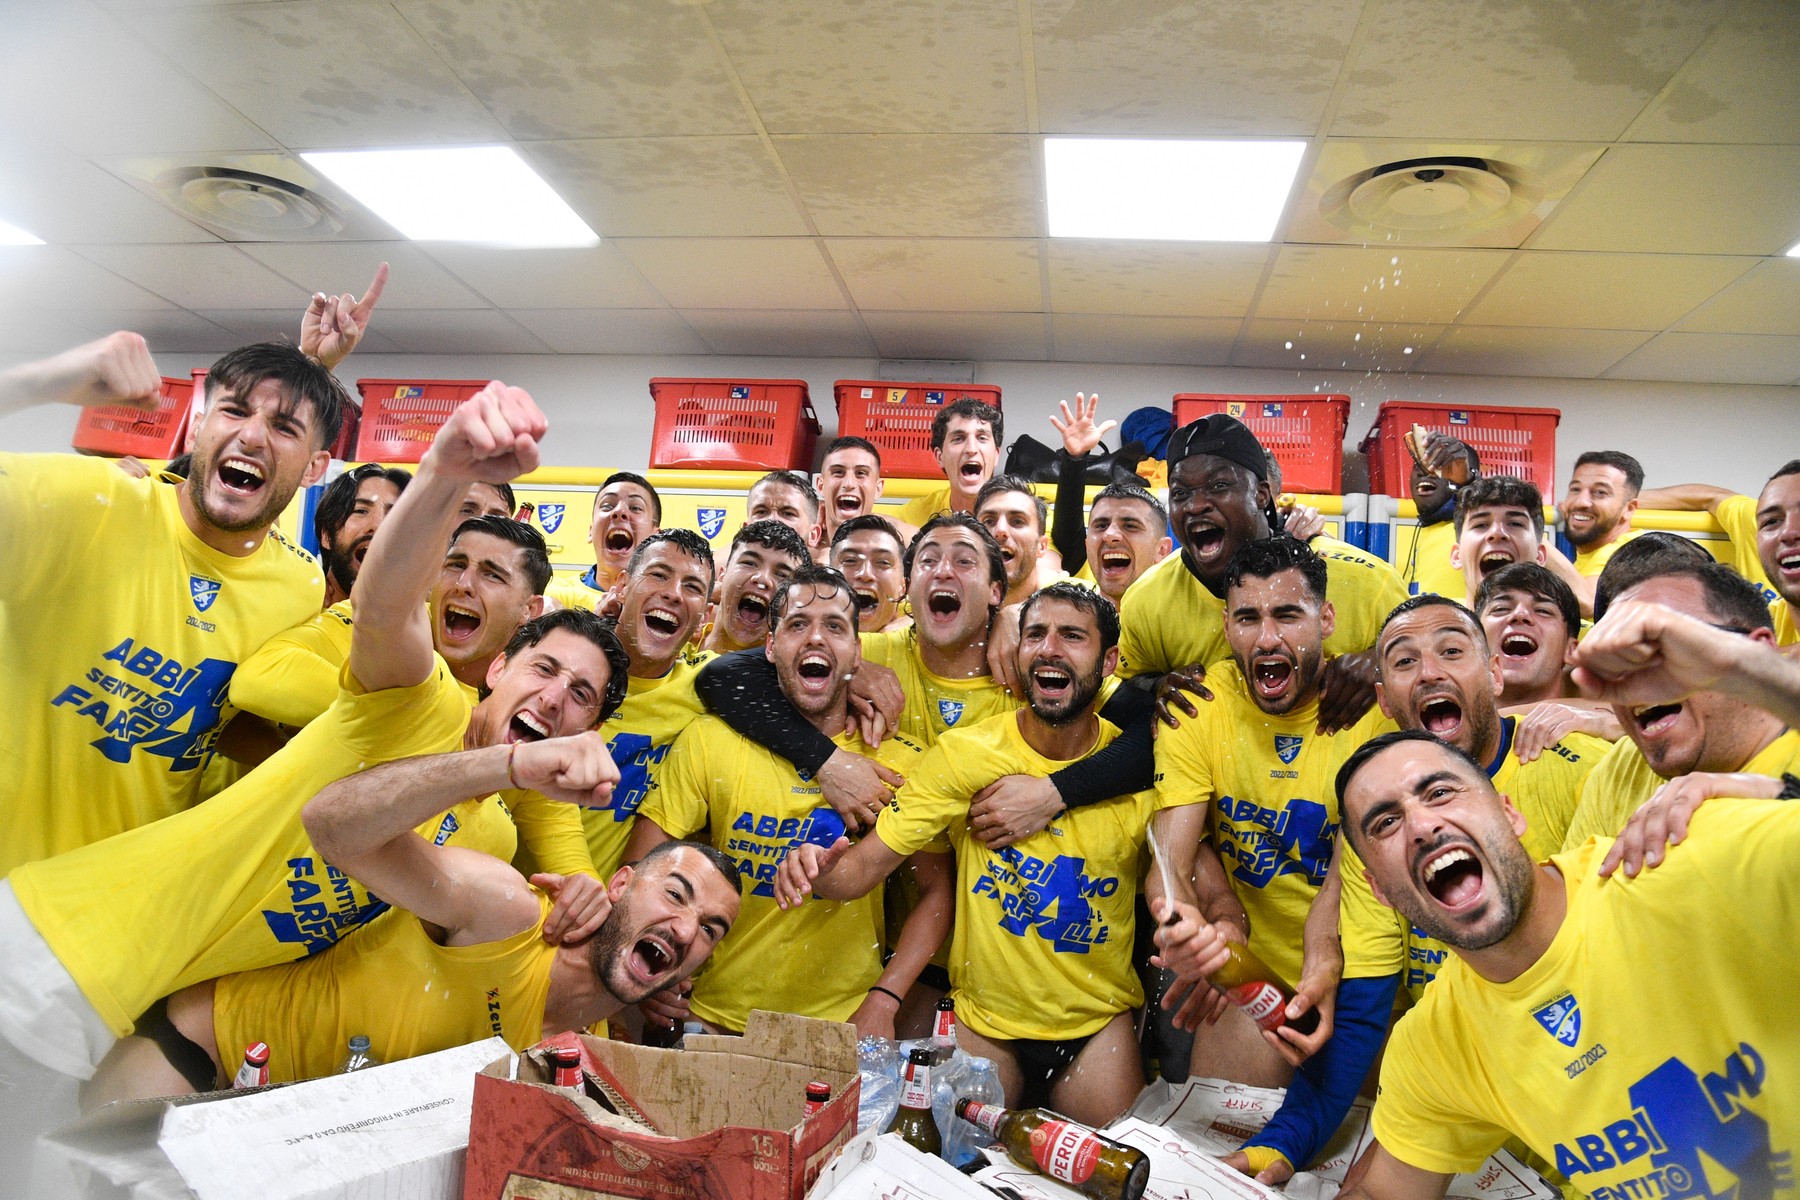 Fanii au invadat terenul după ce echipa lui Boloca a promovat matematic în Serie A